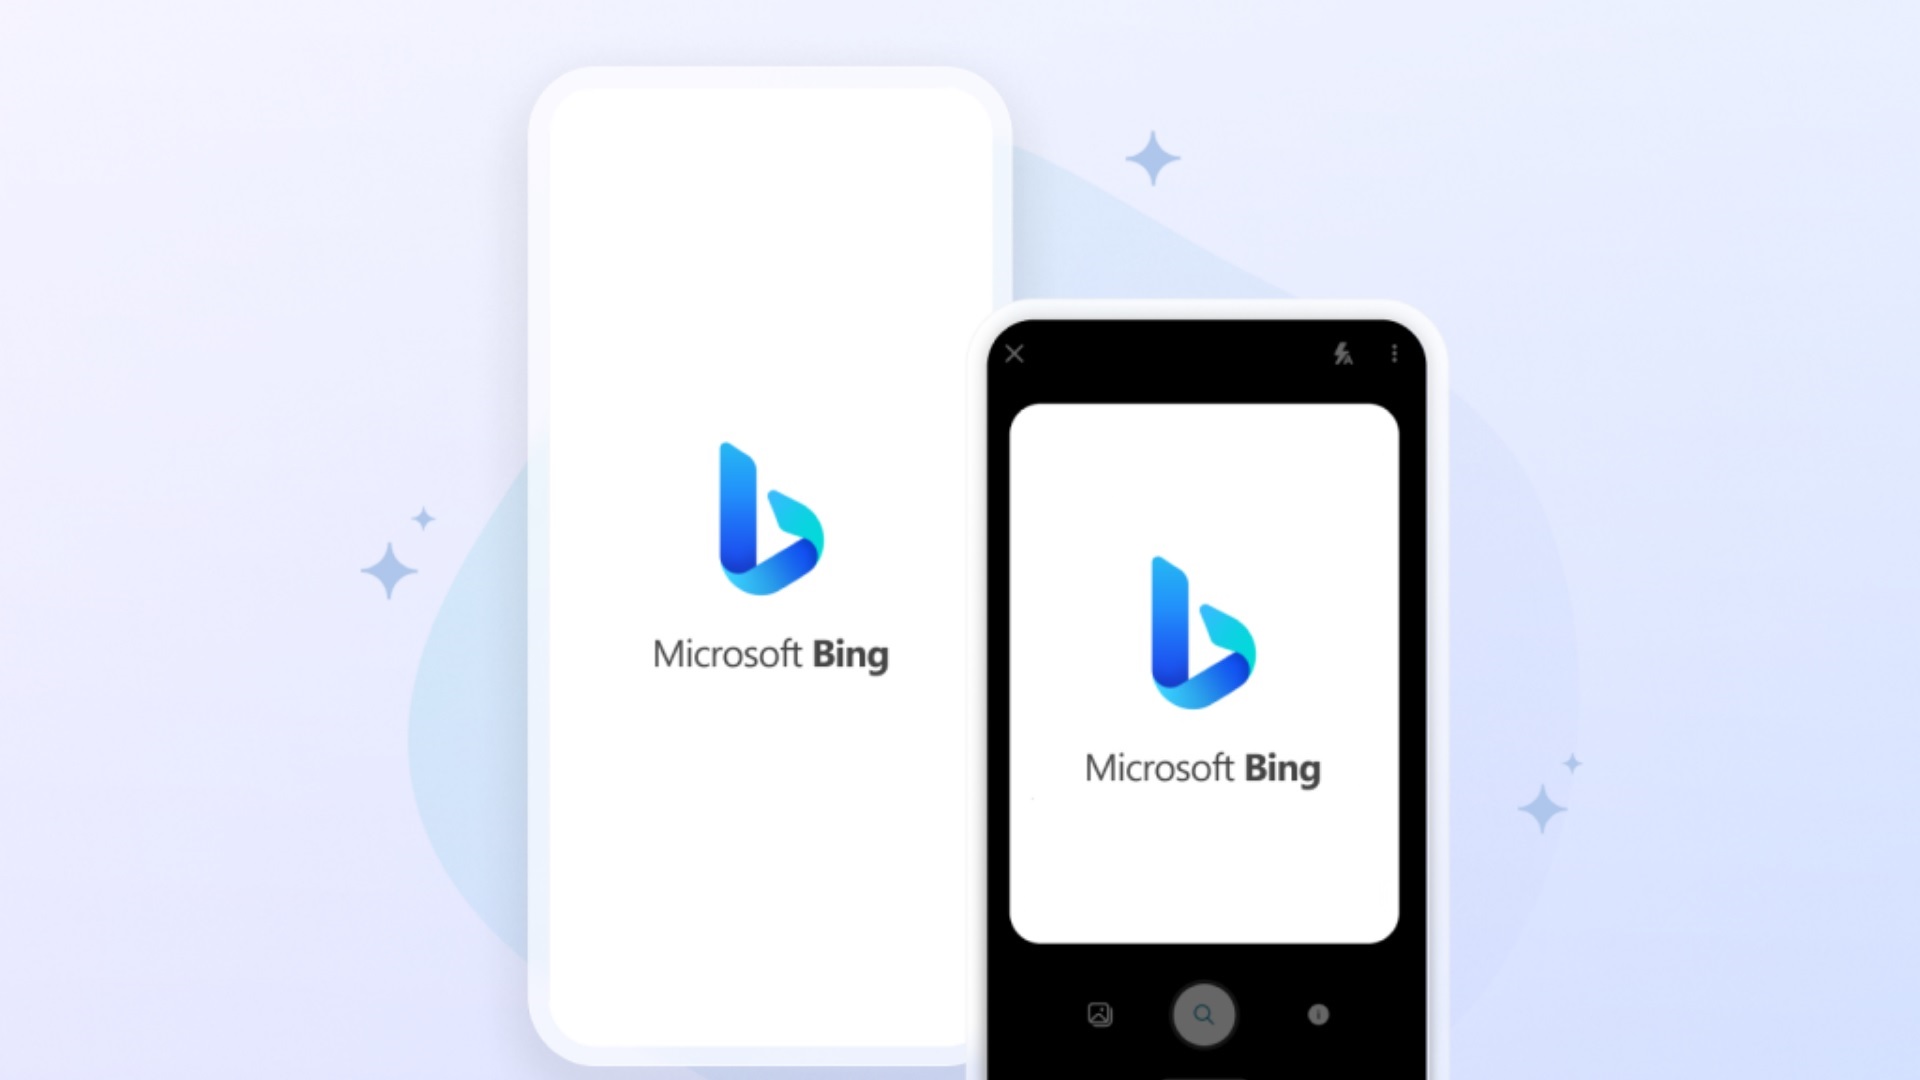 Microsoft está desplegando una serie de actualizaciones de Bing Chat y Edge en dispositivos móviles con funciones mejoradas en el núcleo de la IA